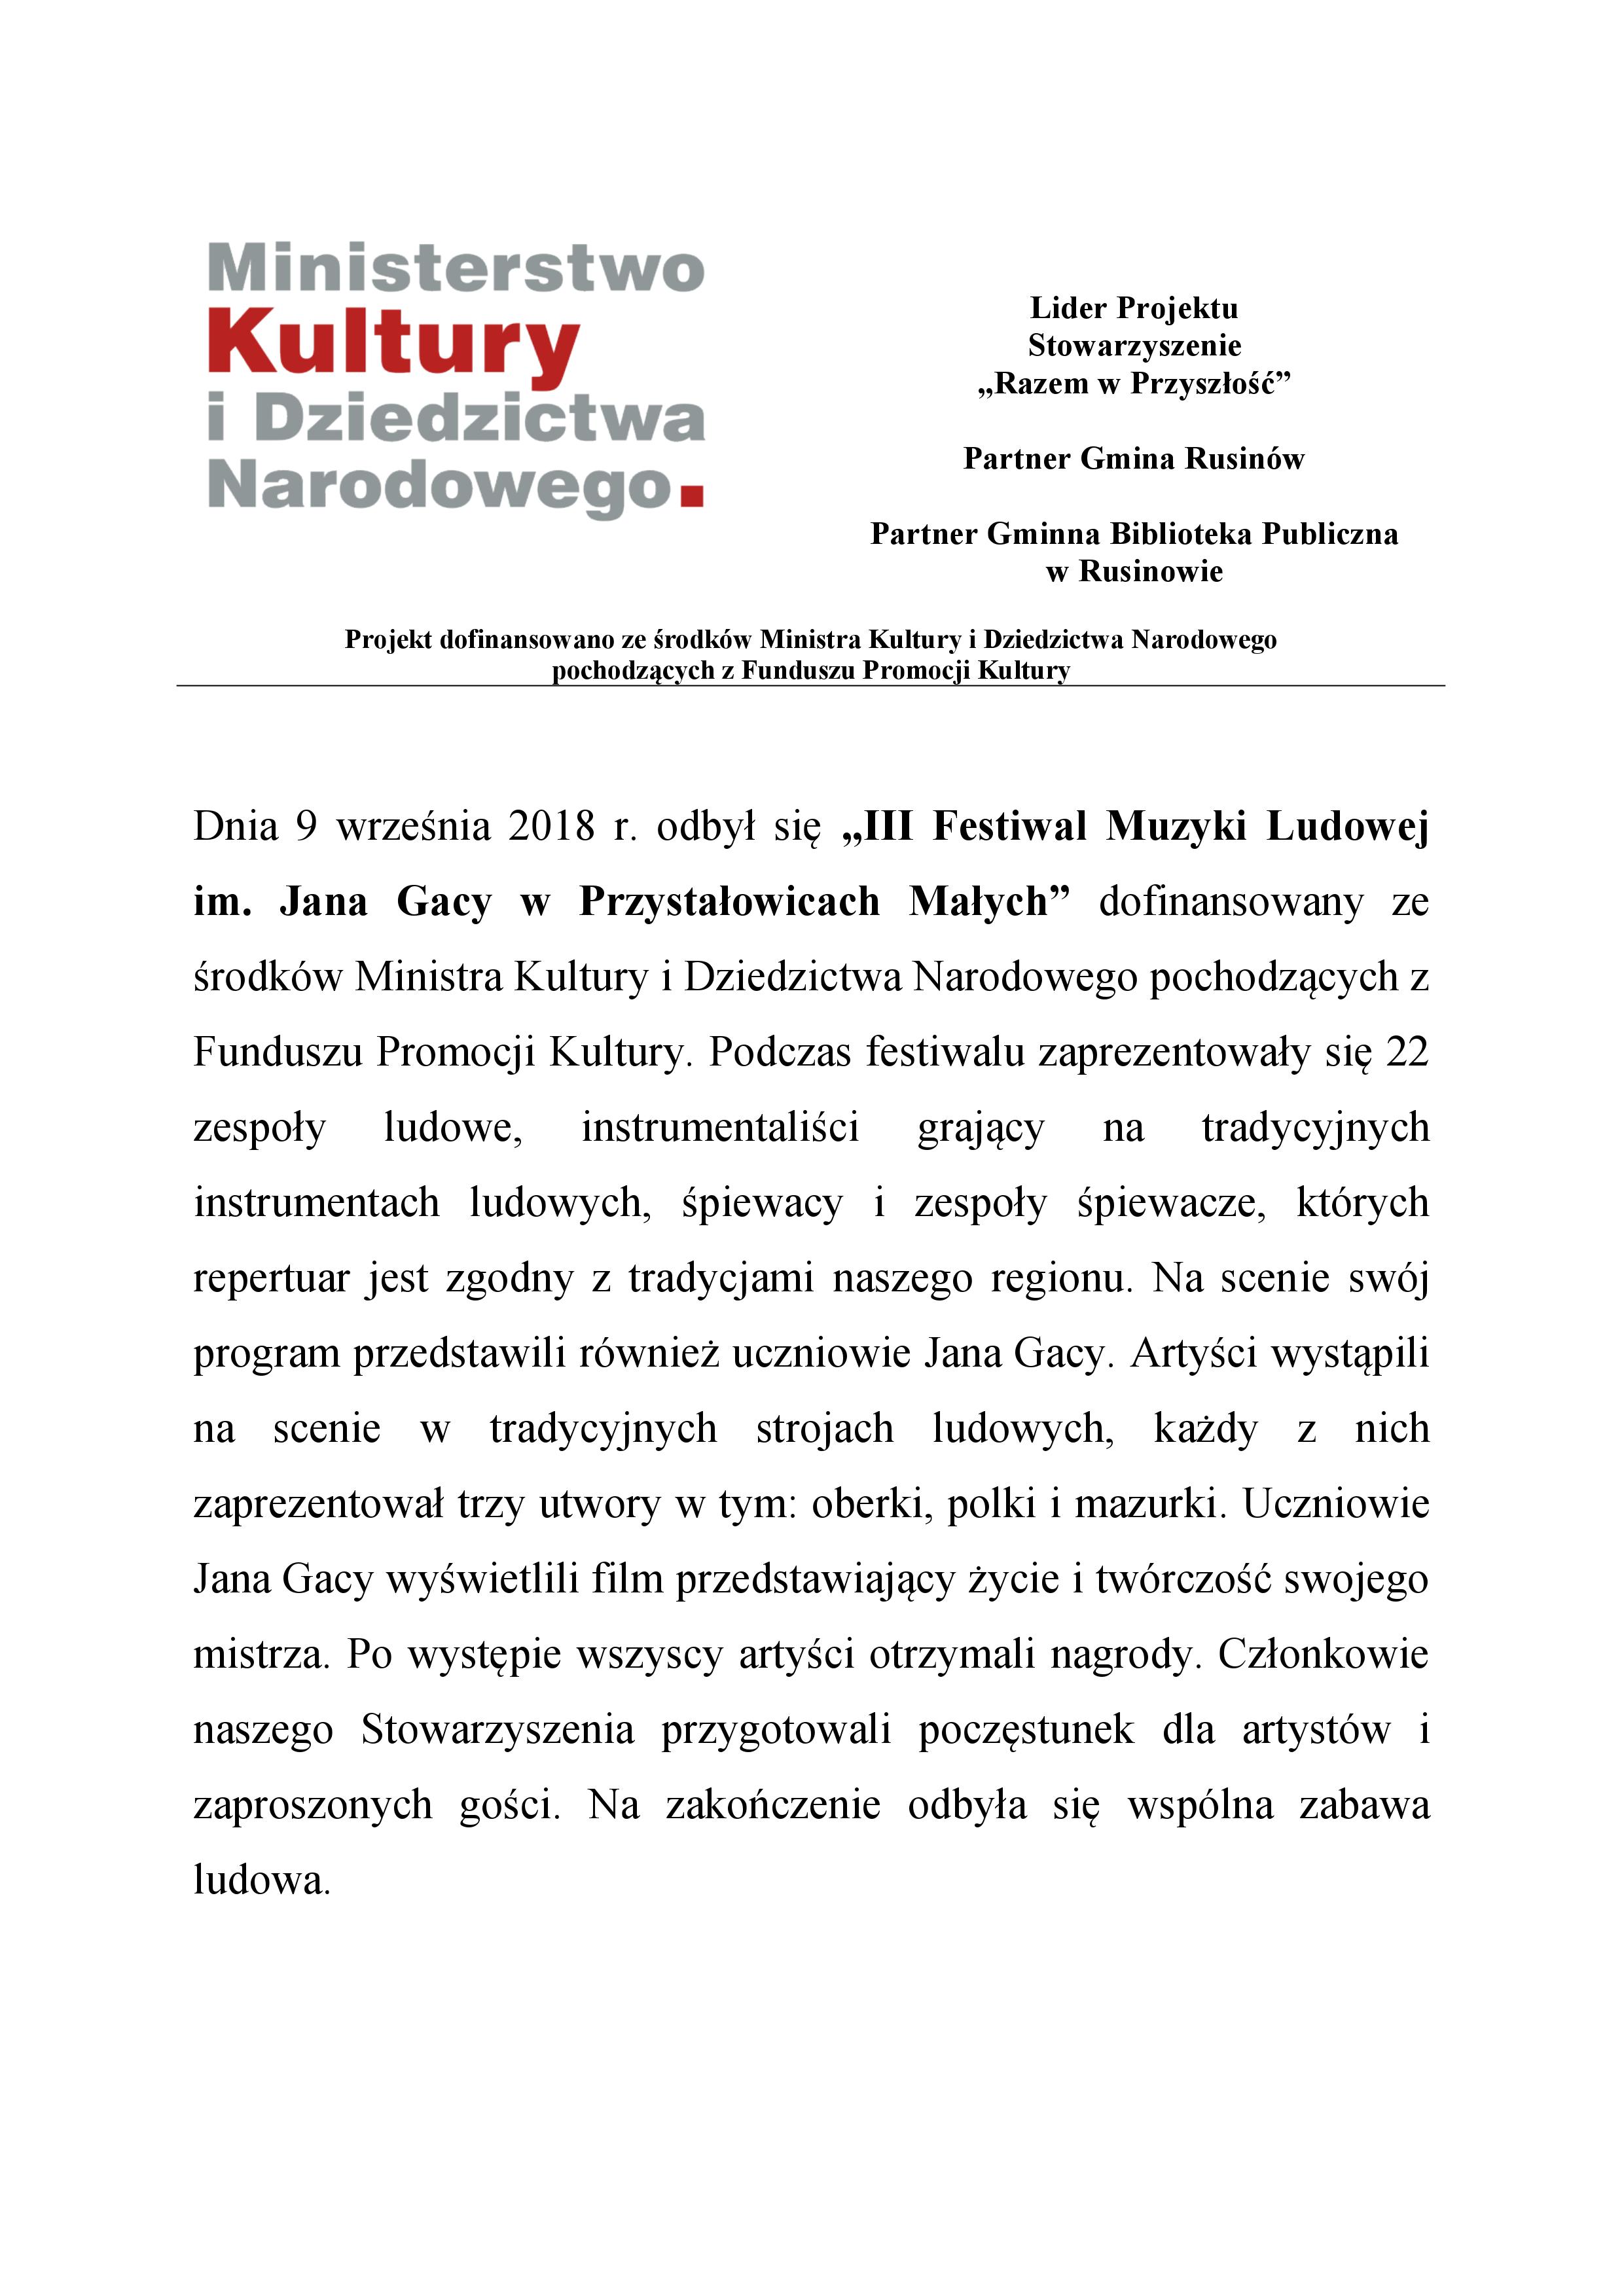 III Festiwal Muzyki Ludowej im. Jana Gacy w Przystałowicach Małych